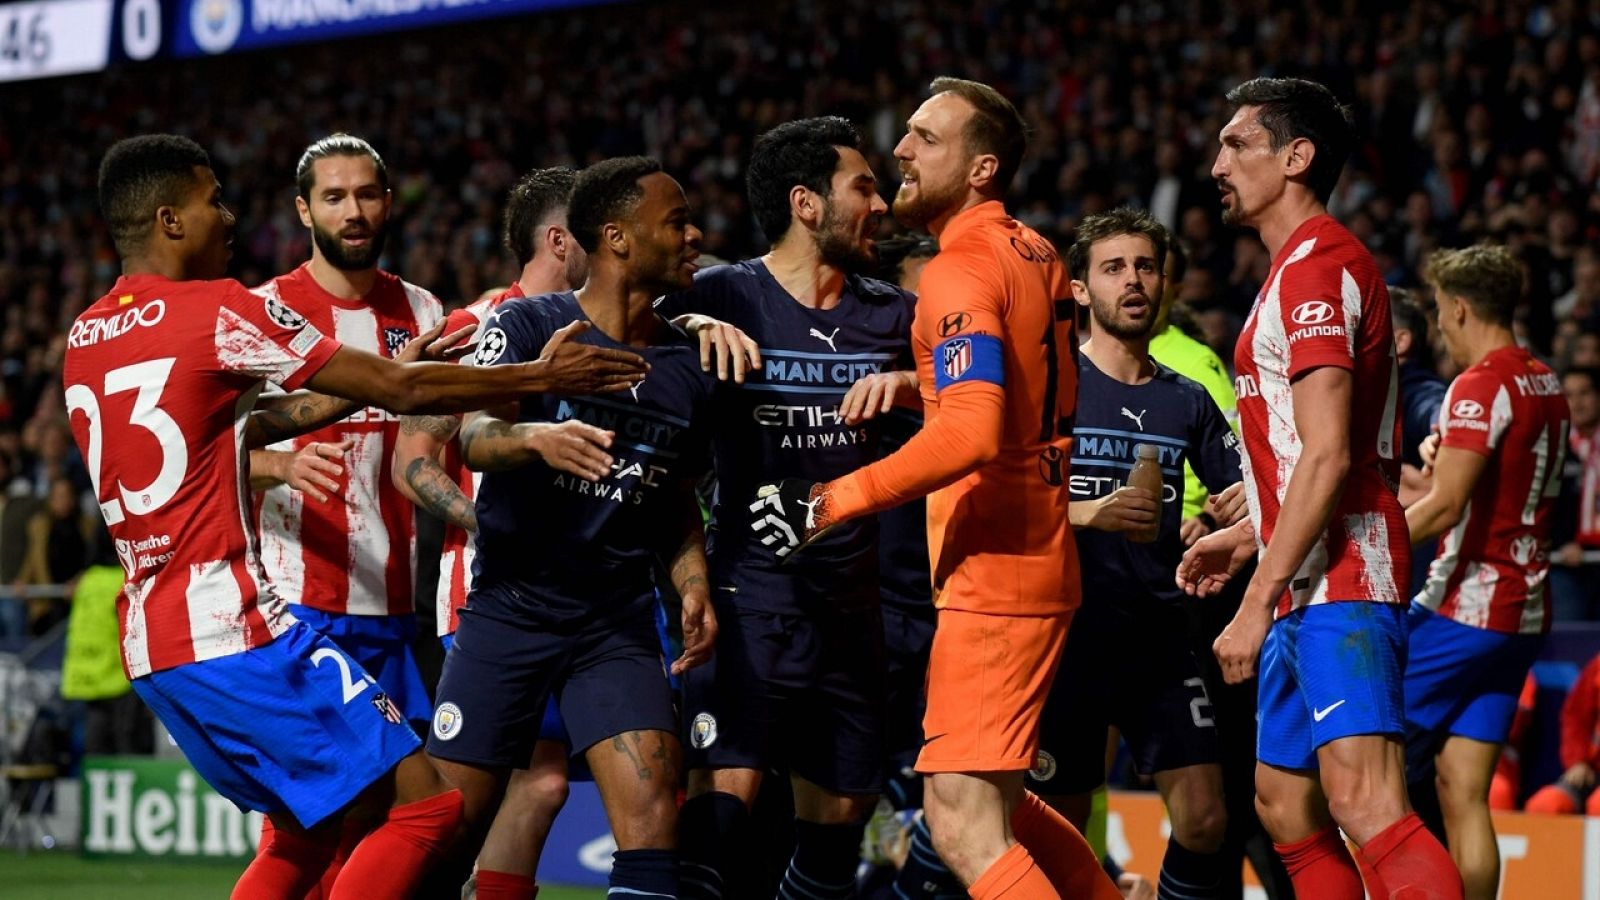 Tensión entre Atlético y City durante y tras el partido